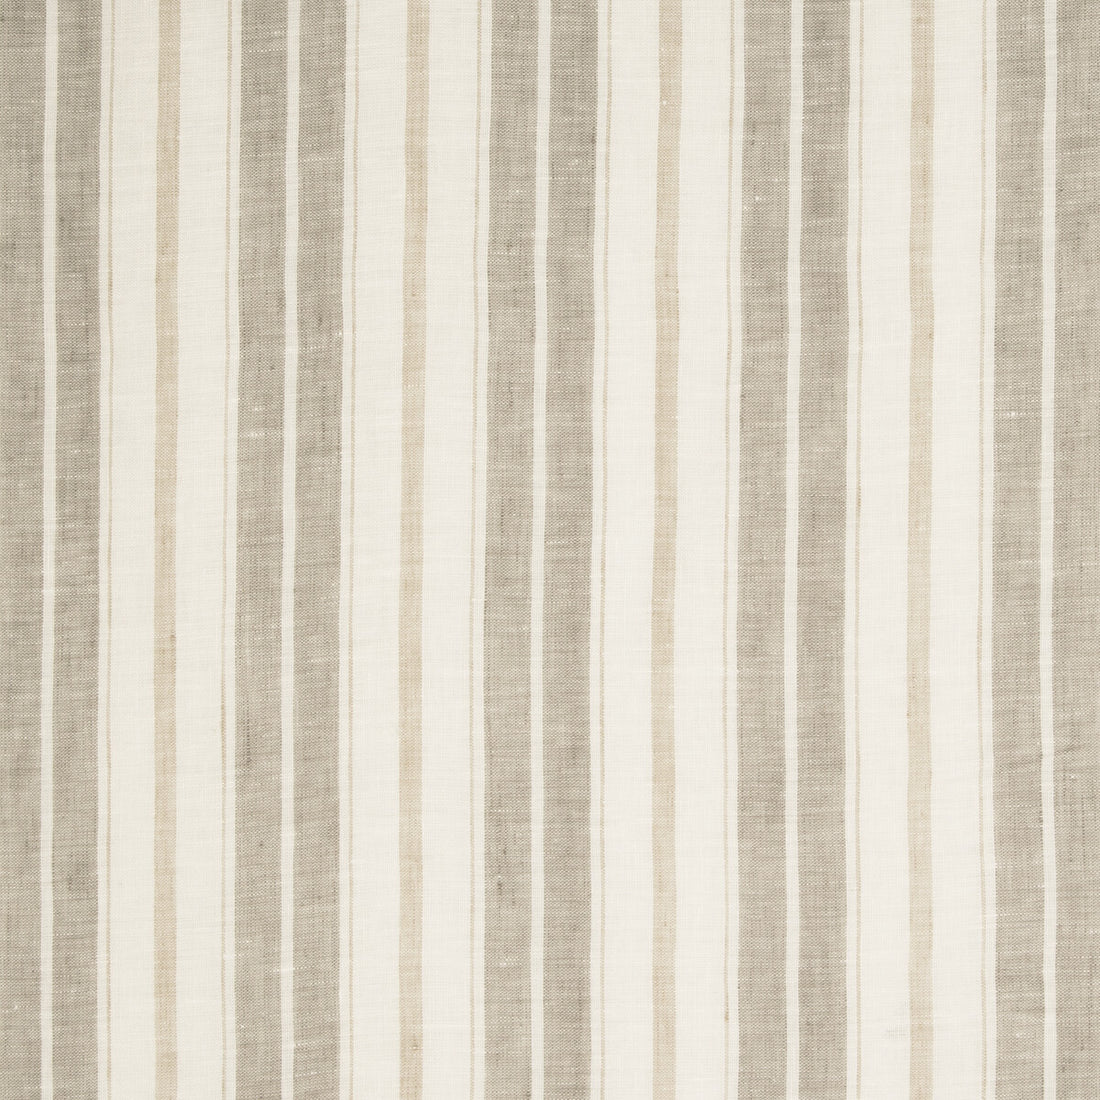 Kravet Design fabric in 4841-106 color - pattern 4841.106.0 - by Kravet Design